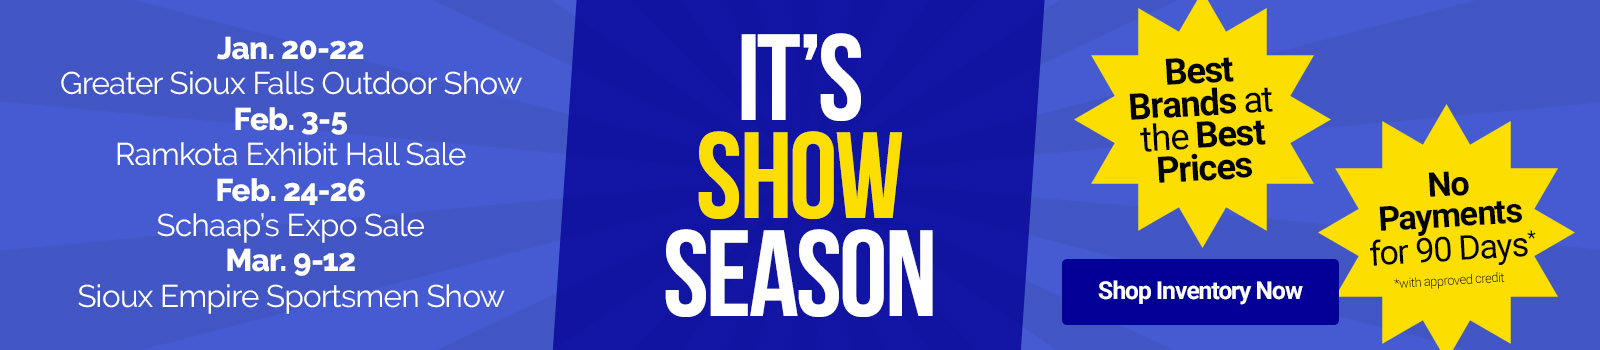 RV Show Season Banner